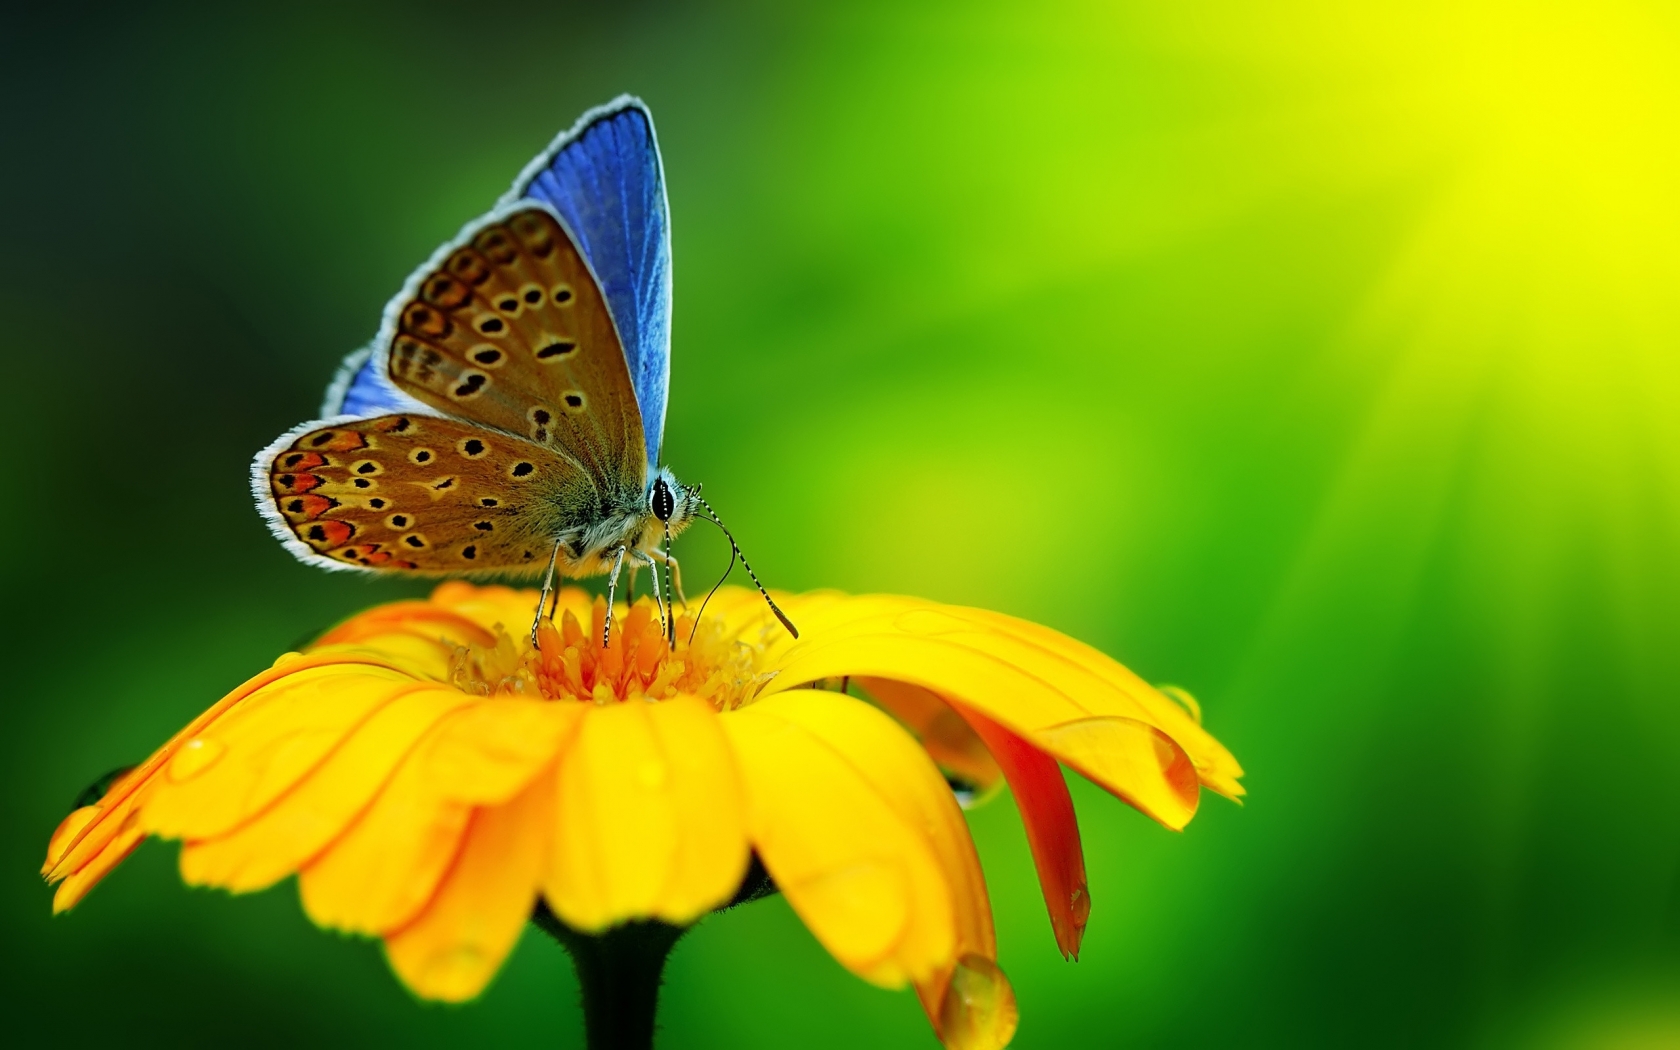 Butterfly Pollen for 1680 x 1050 widescreen resolution